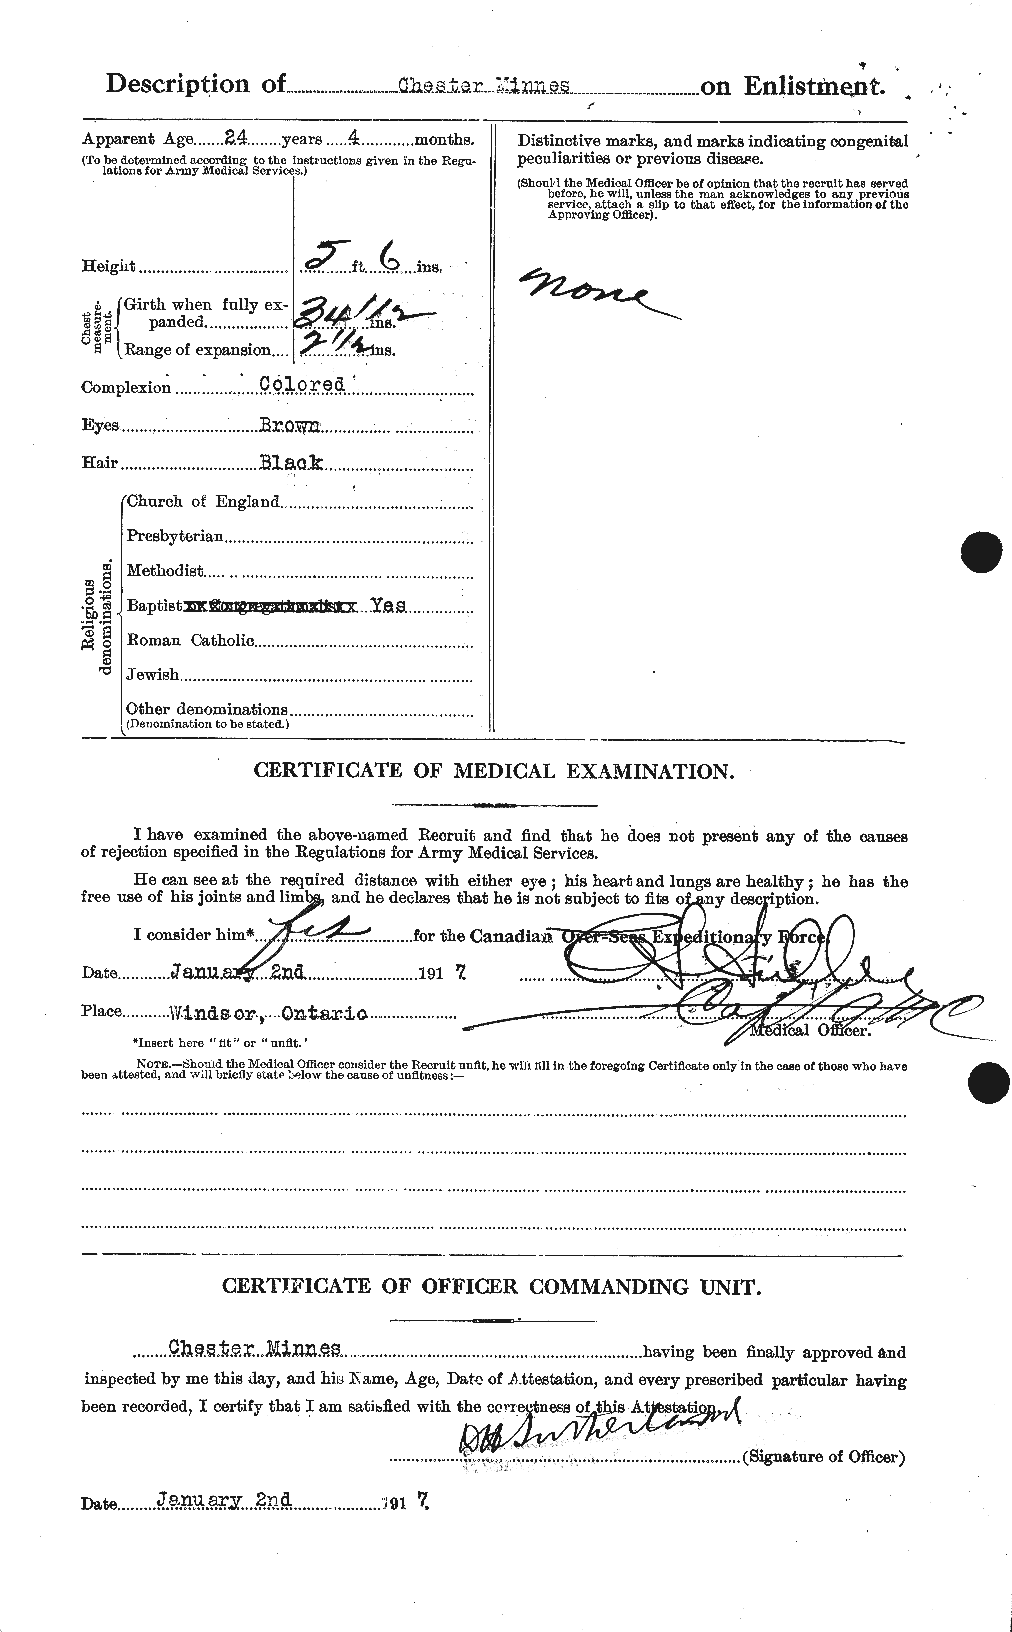 Dossiers du Personnel de la Première Guerre mondiale - CEC 500913b